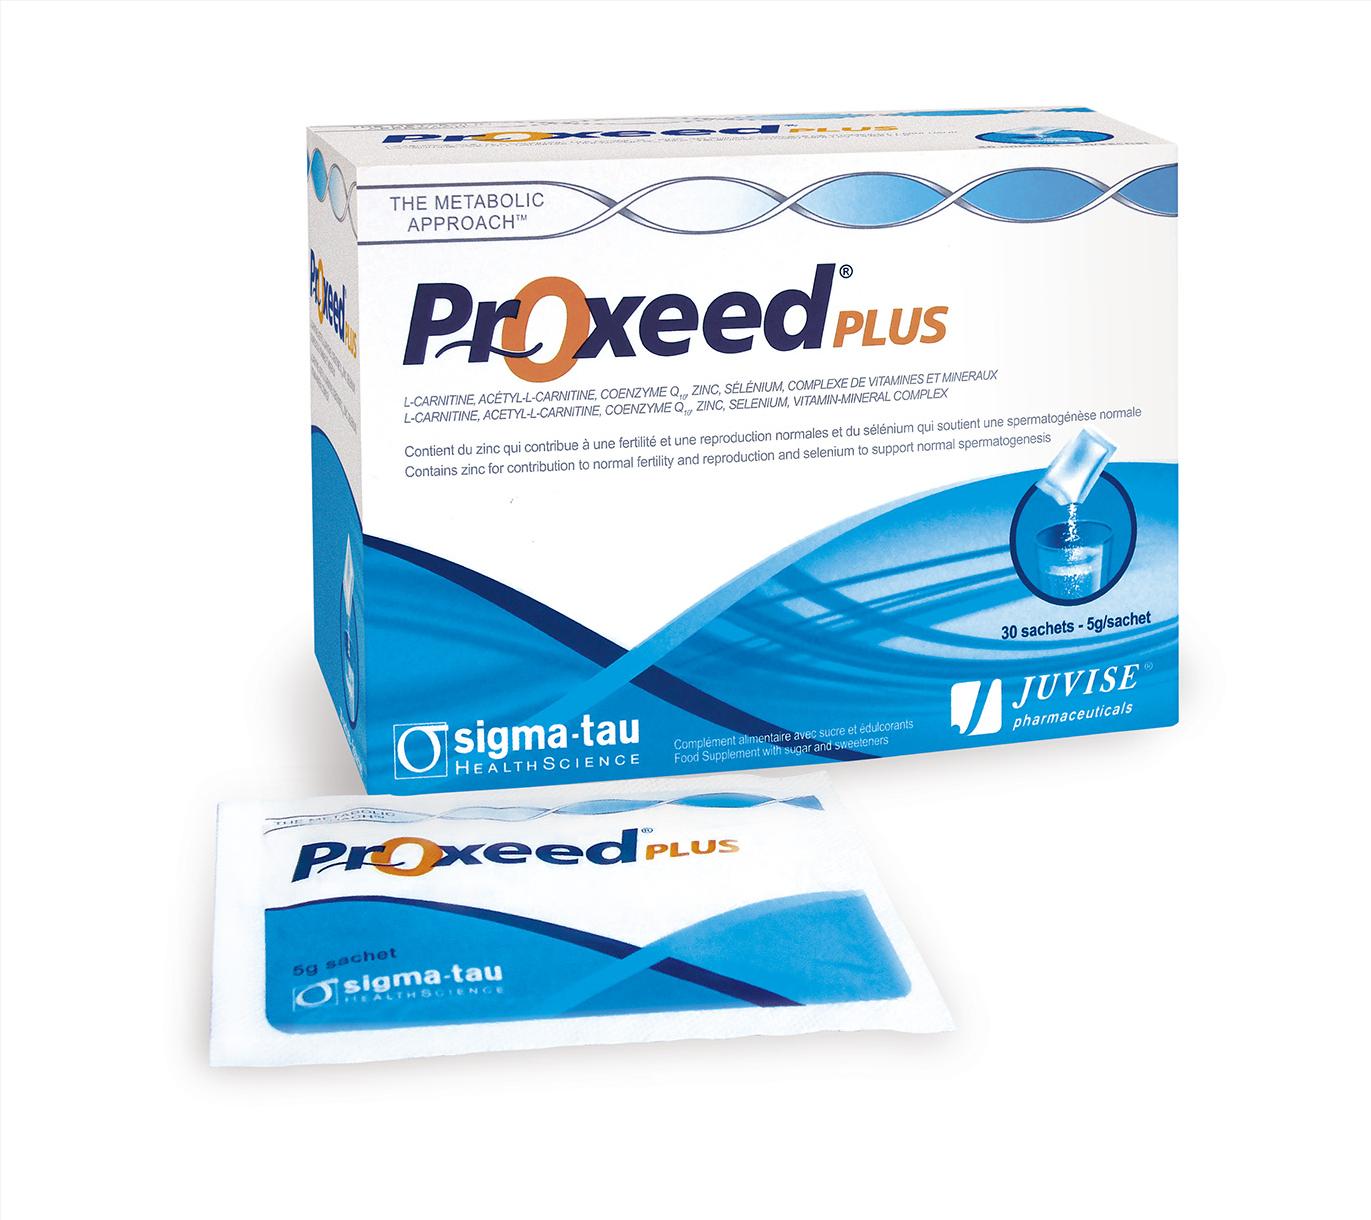 Thuốc Proxeed Plus giá bao nhiêu, thuốc Proxeed Plus mua ở đâu, thuốc Proxeed Plus?